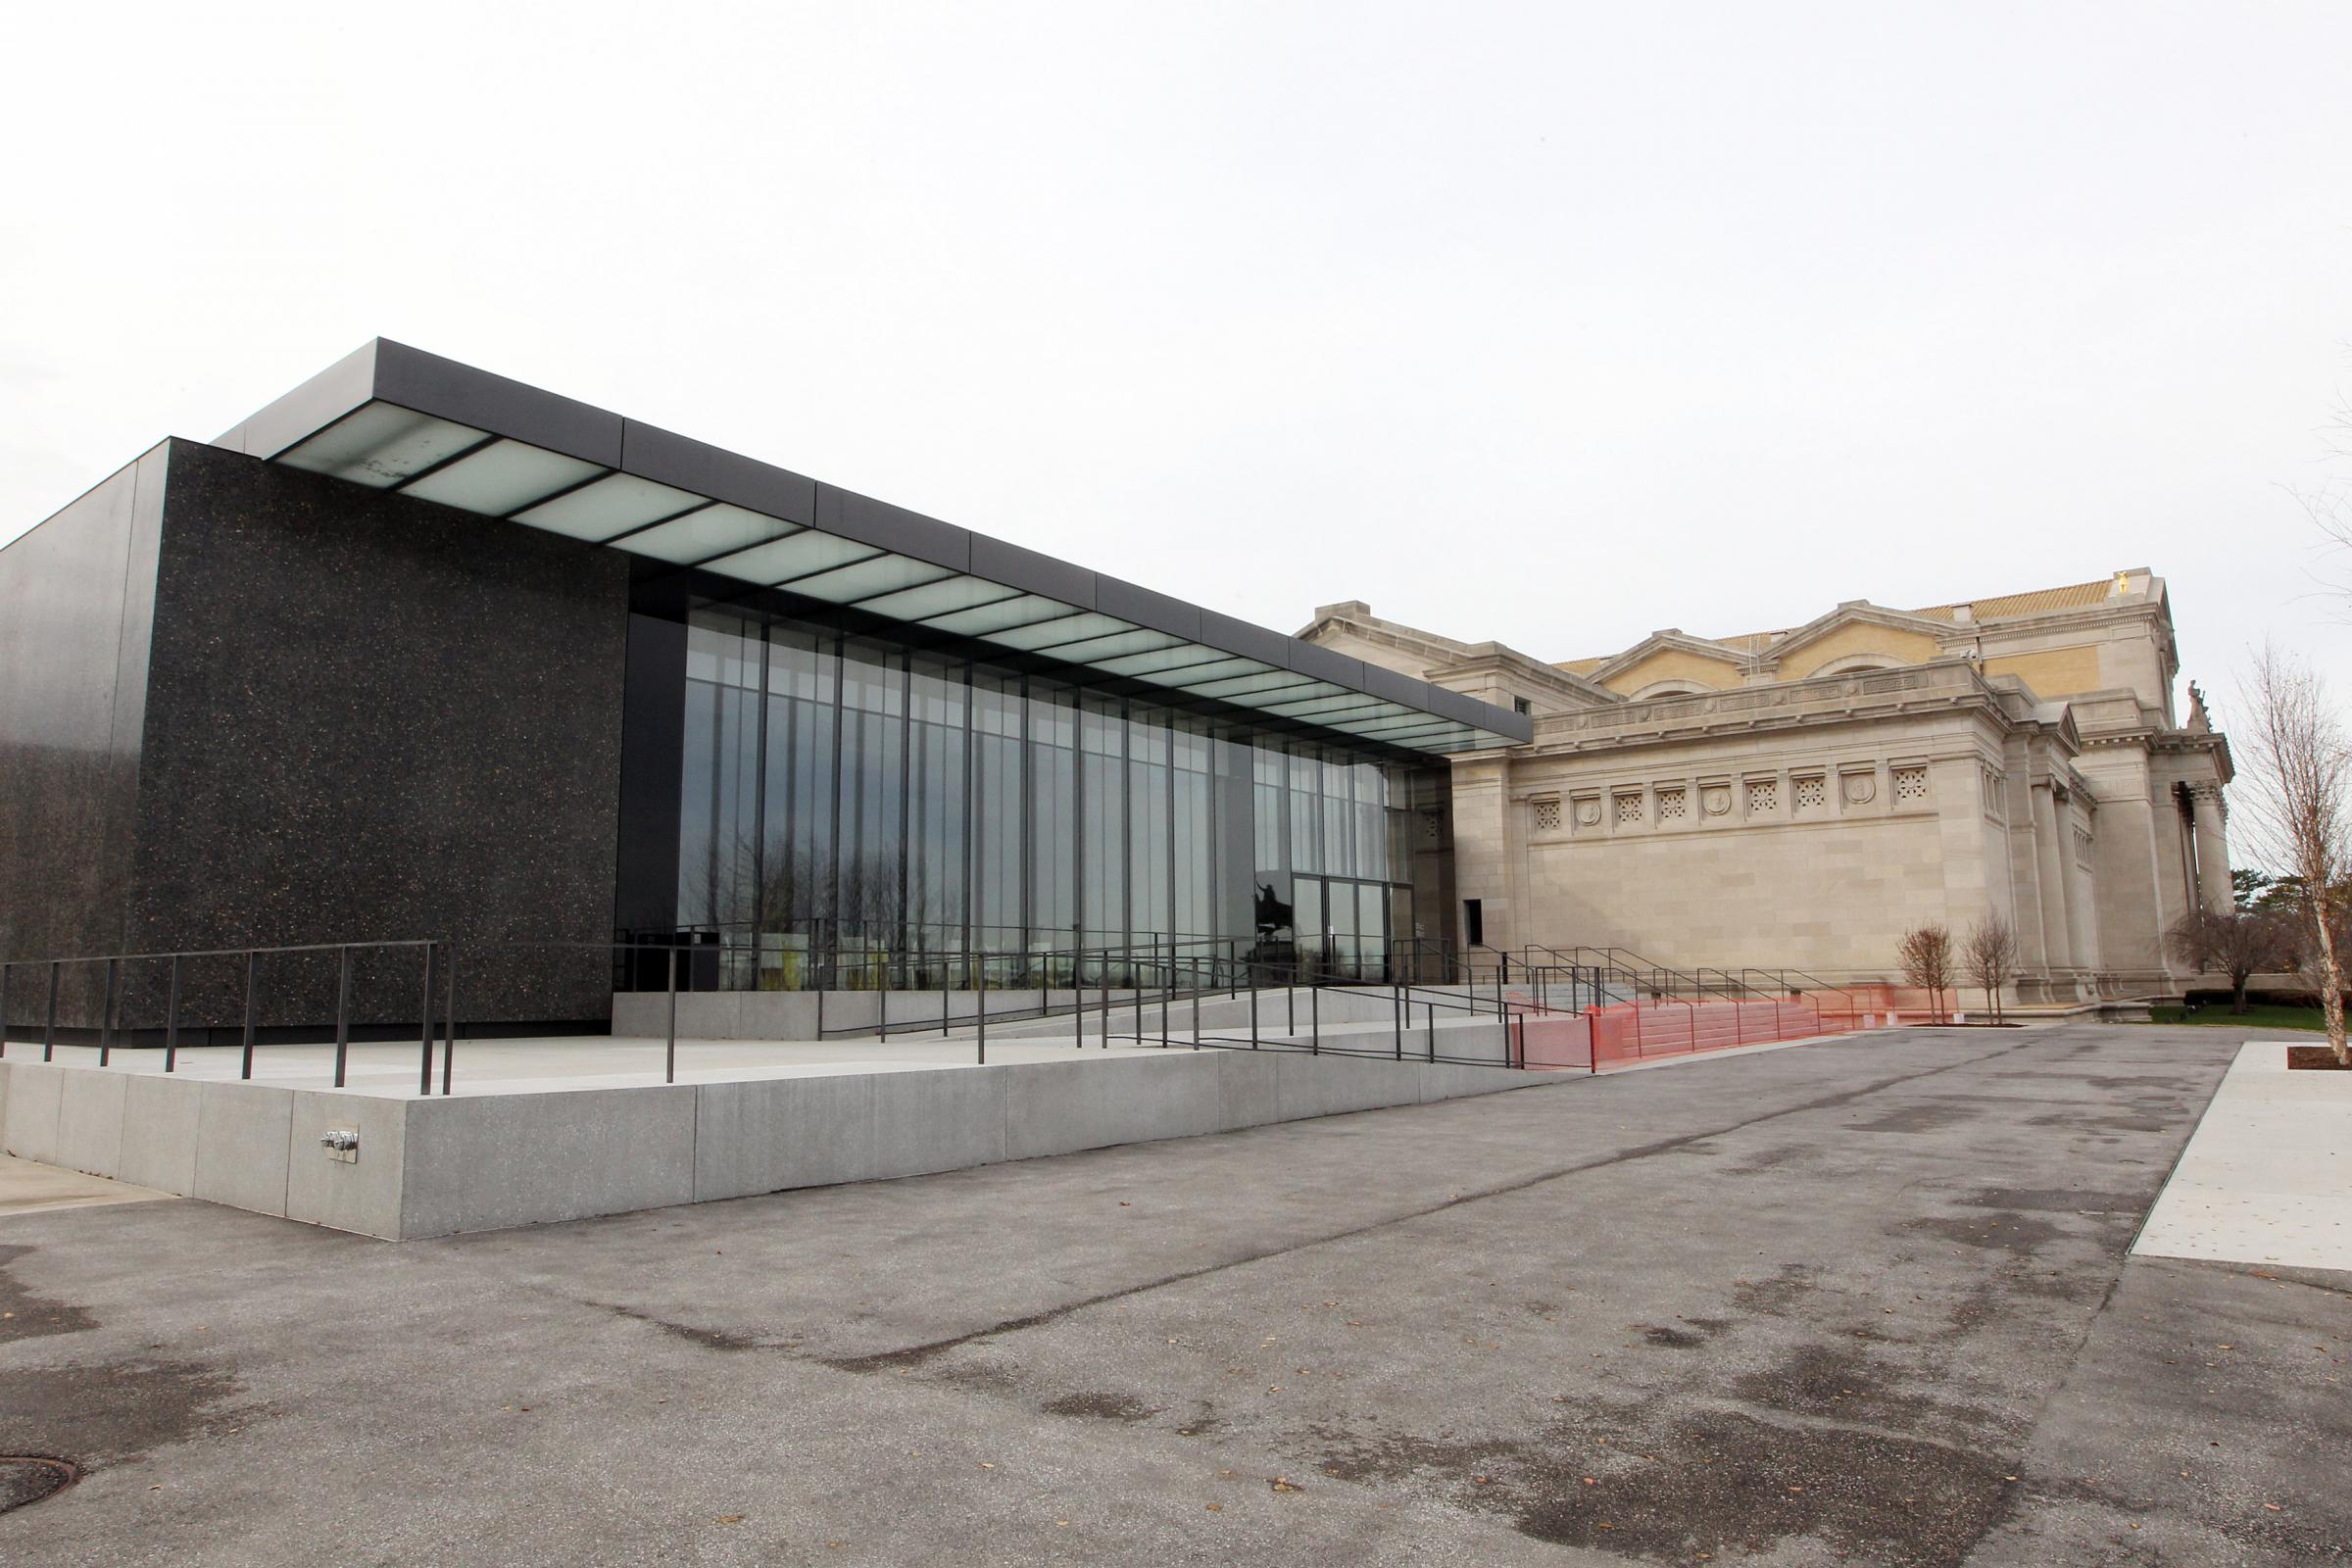 Sneak Peek: St. Louis Art Museum Expansion | St. Louis Public Radio